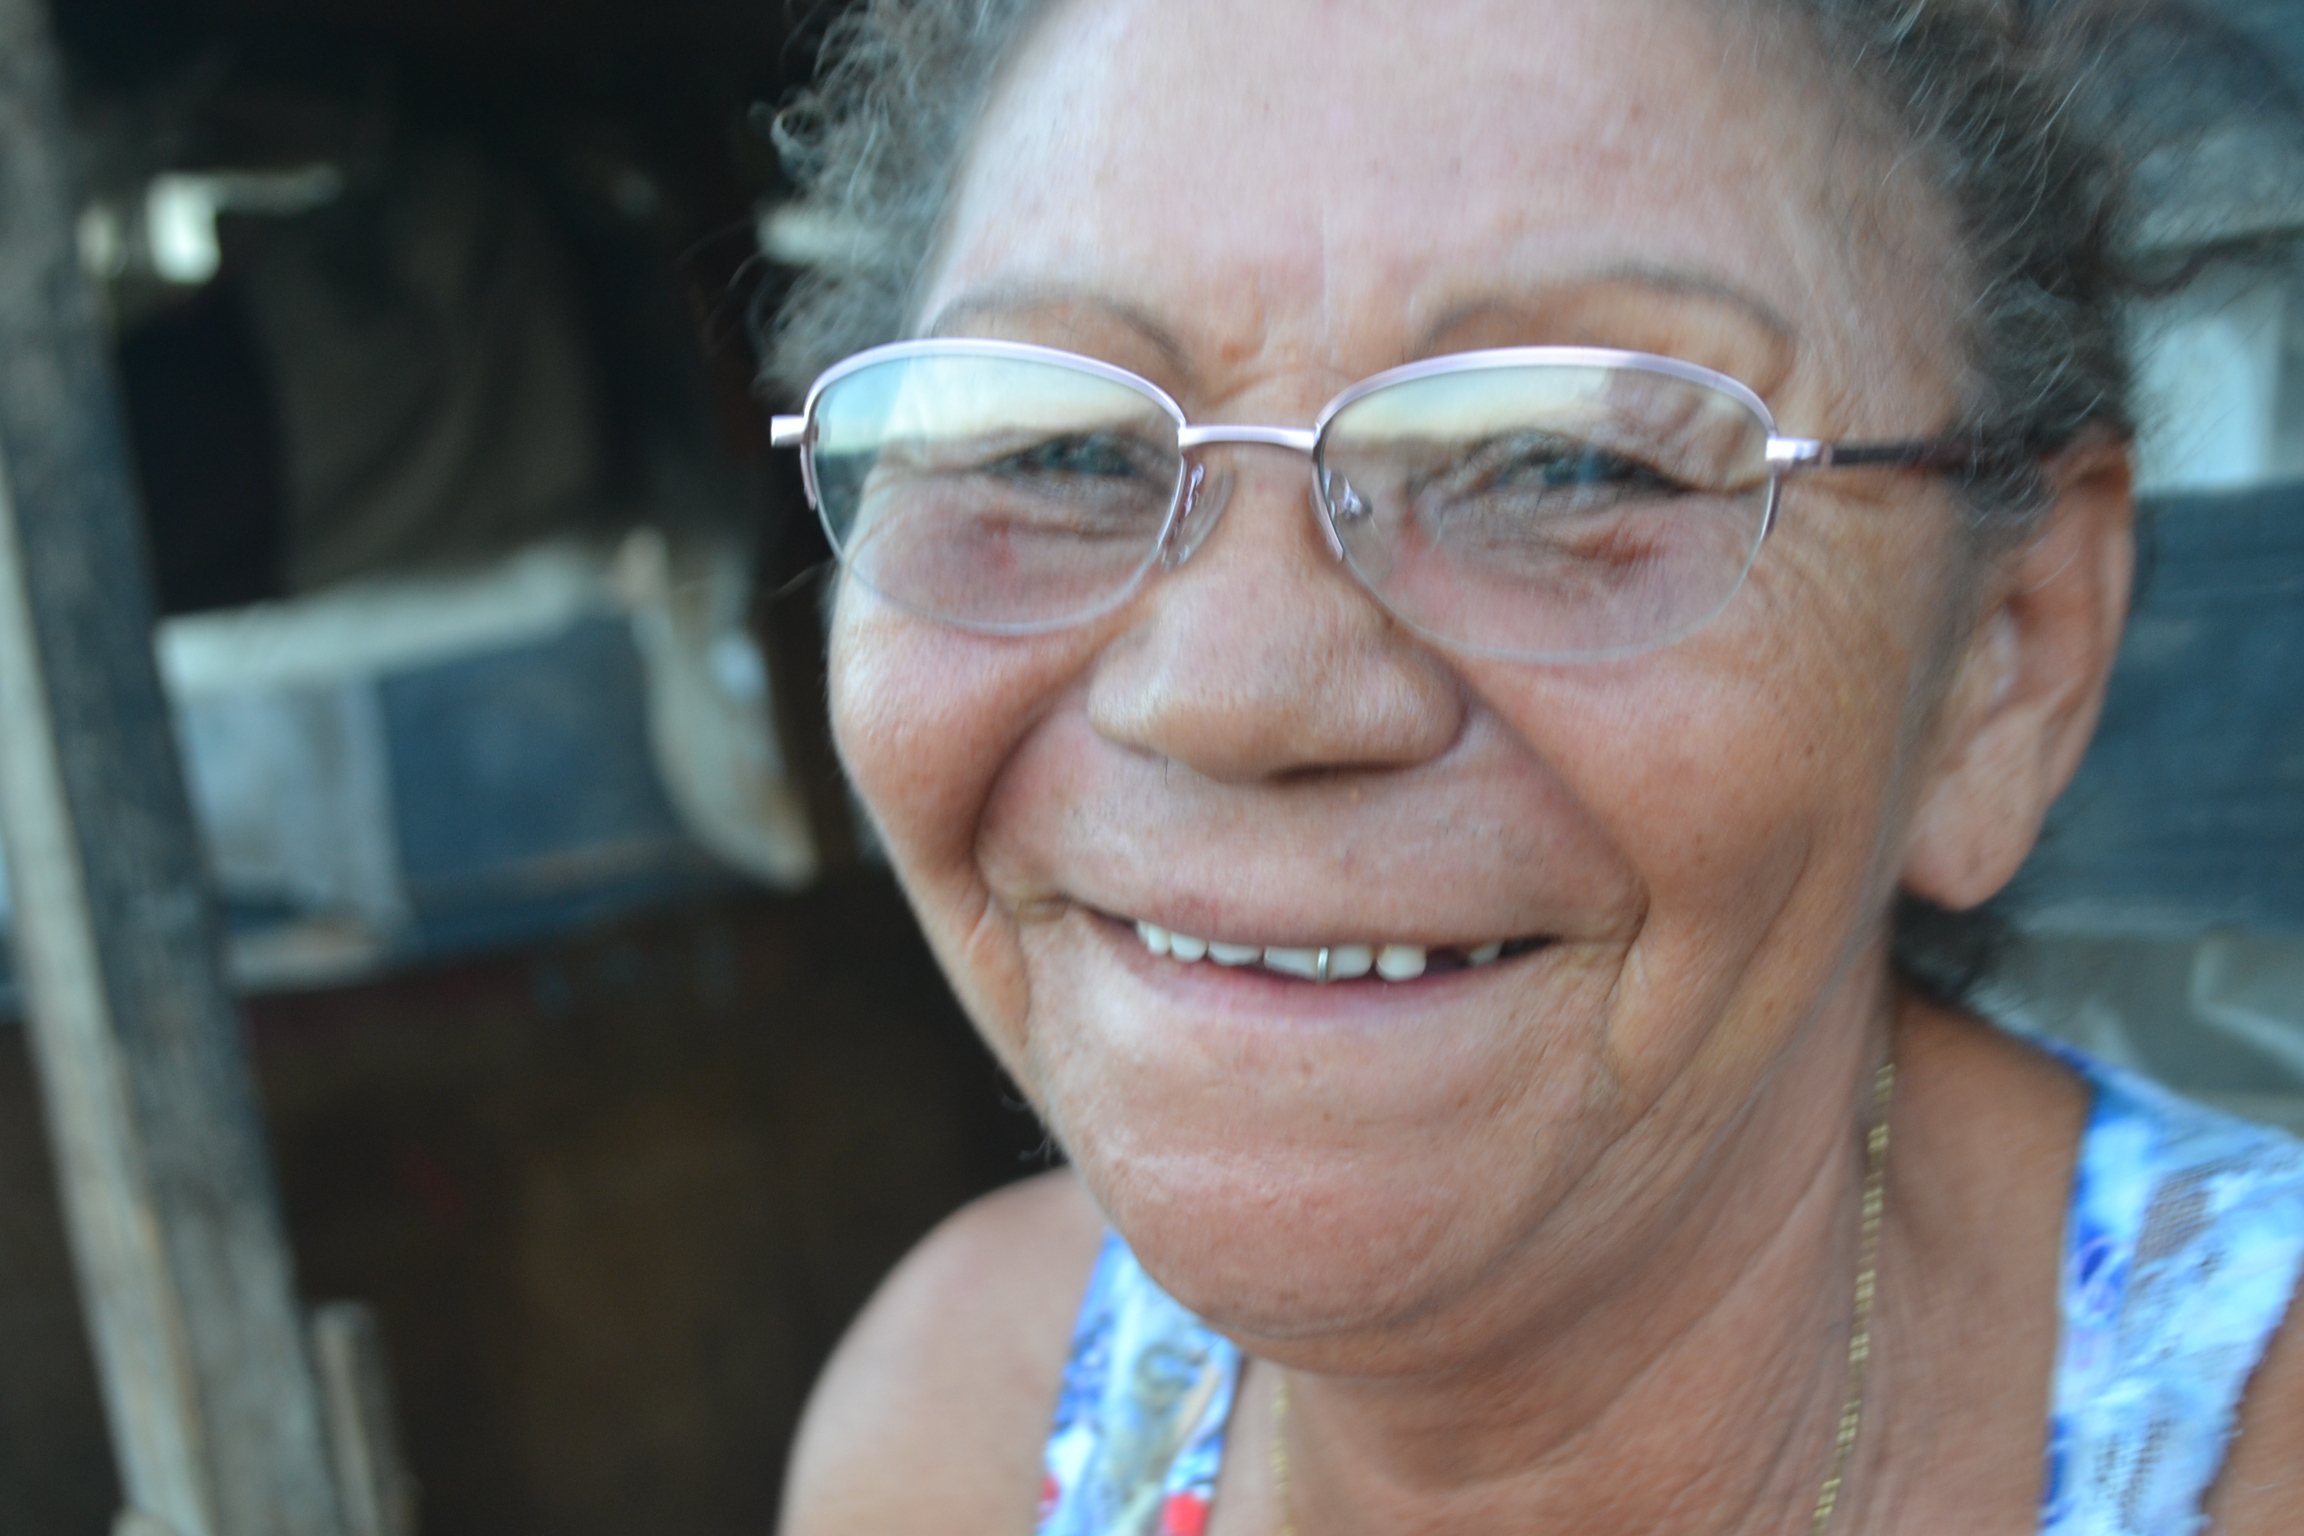 Dona Rita, 57 anos, senti dores de cabeca